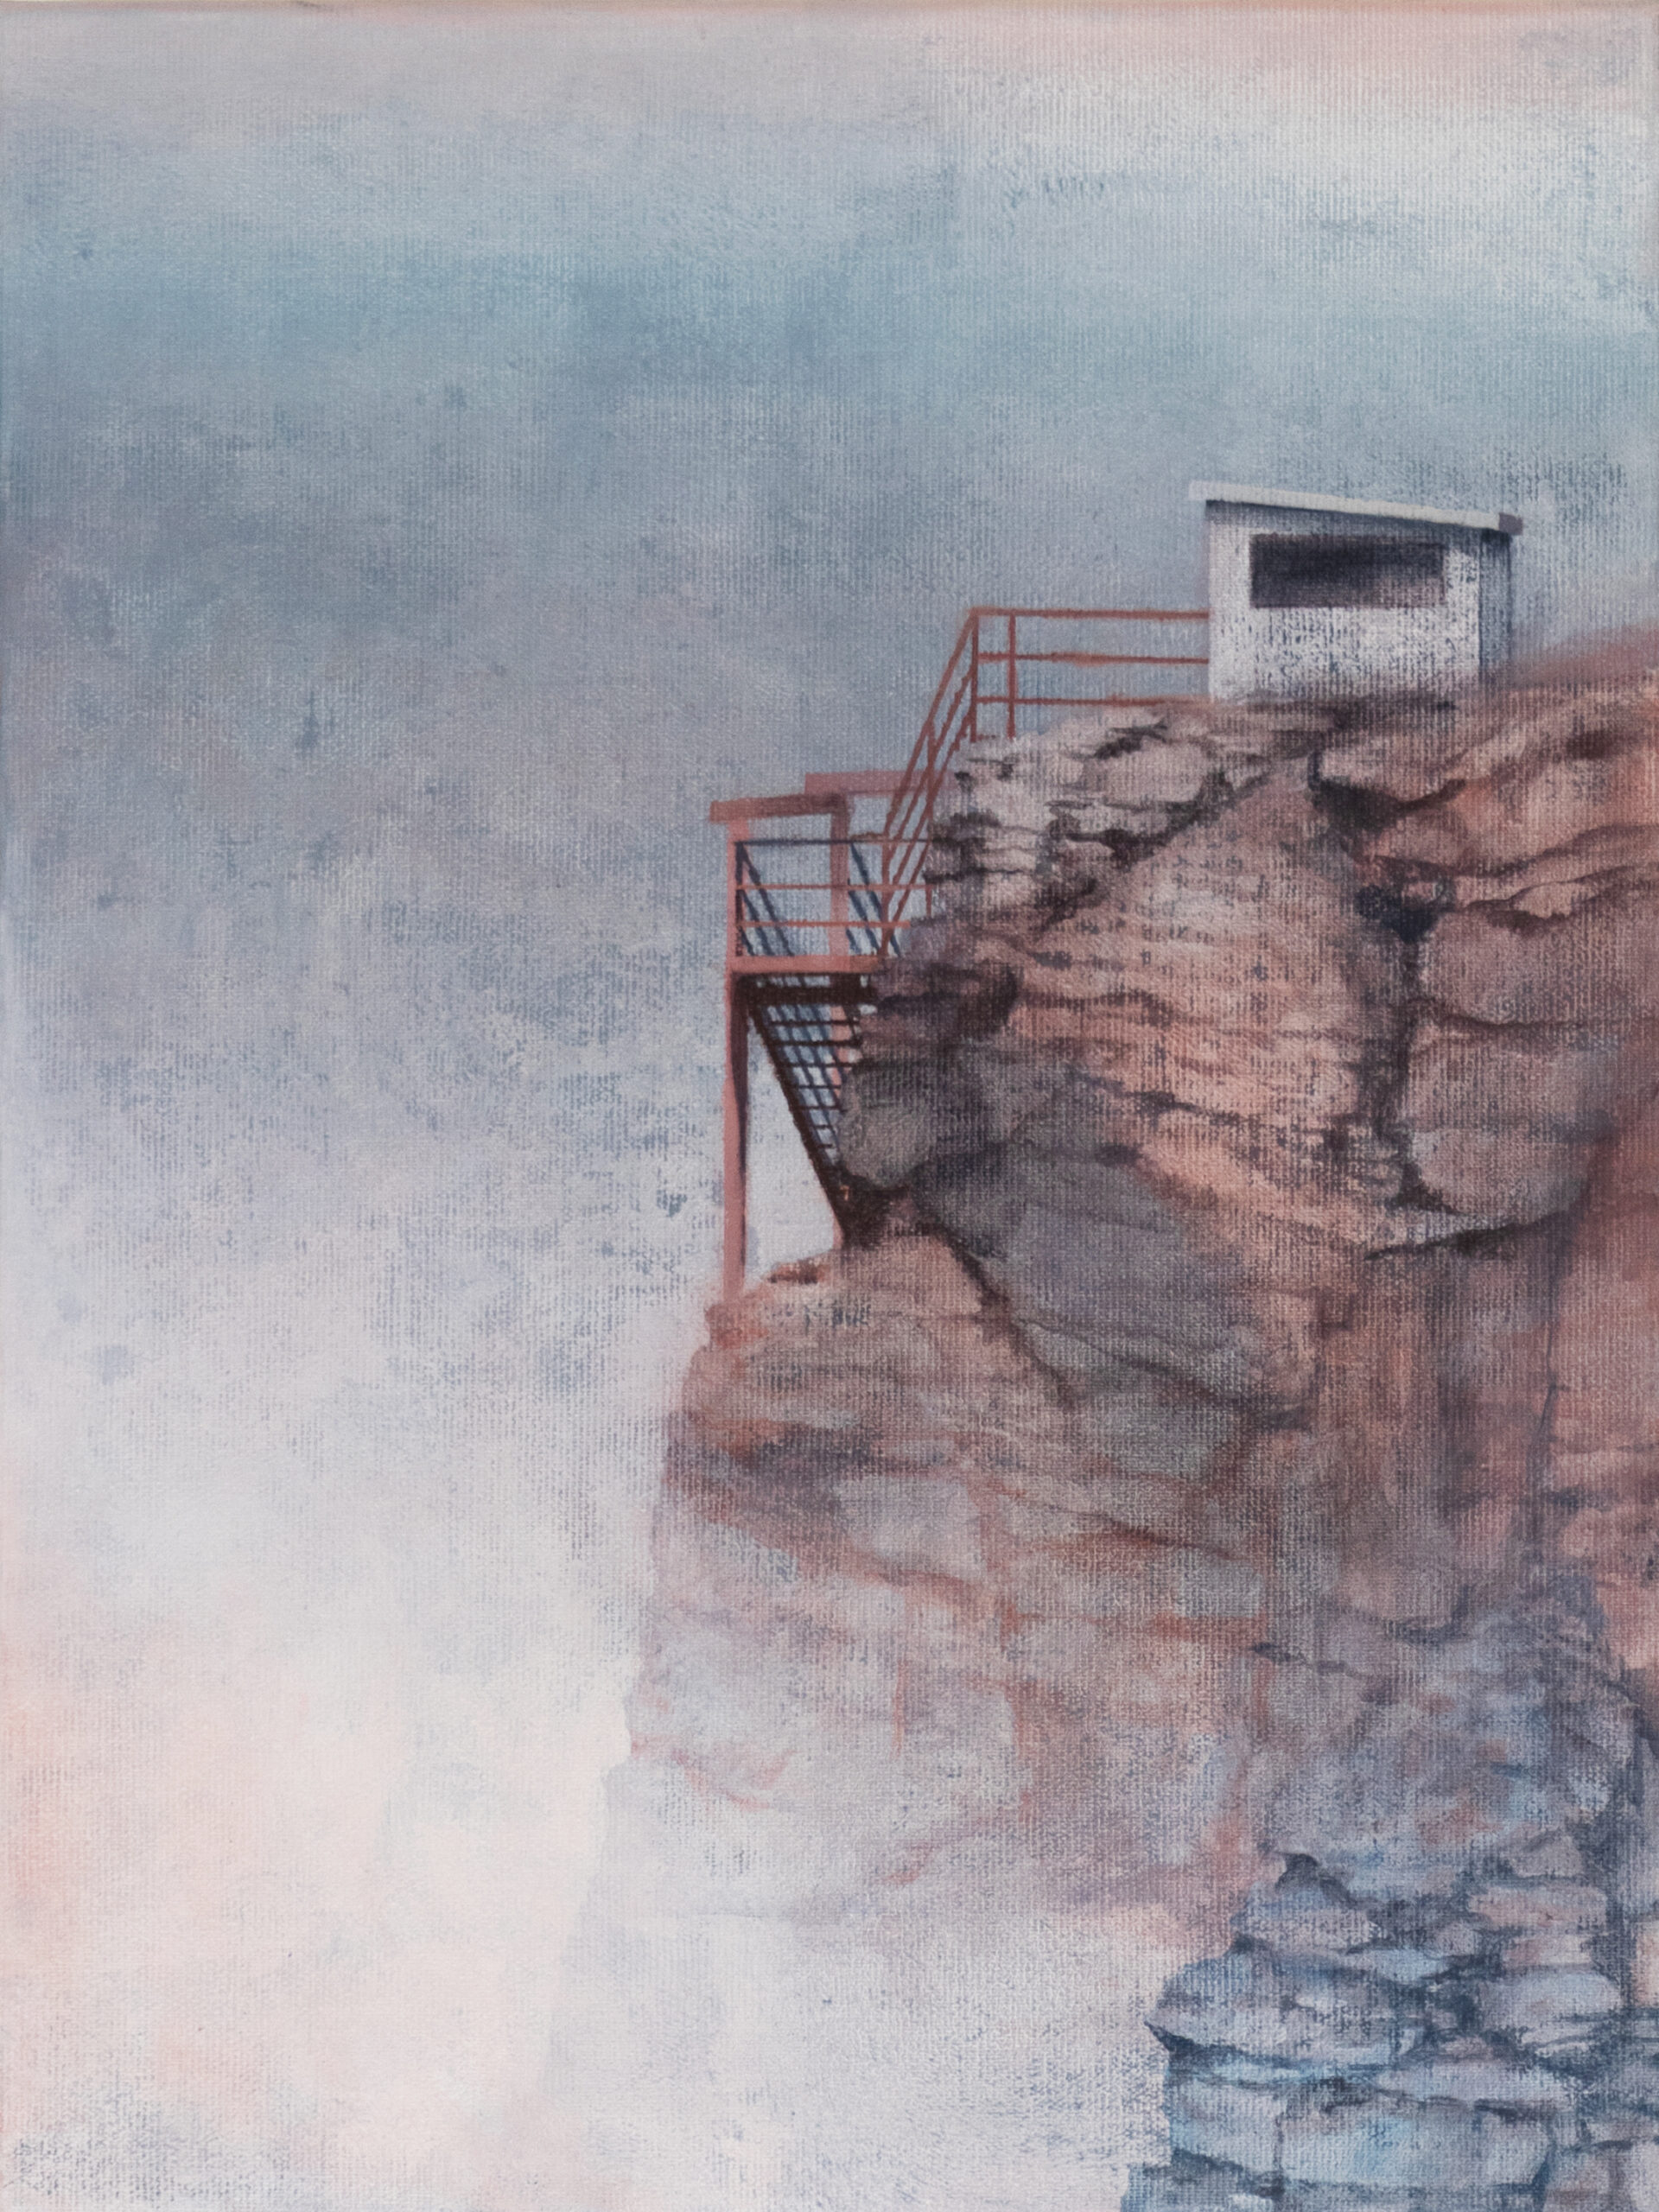 Joanna Pałys Ślady S22-3, z cyklu Sztuka Ziemi, 2022 - szaro-różowy obraz z widokiem na skały